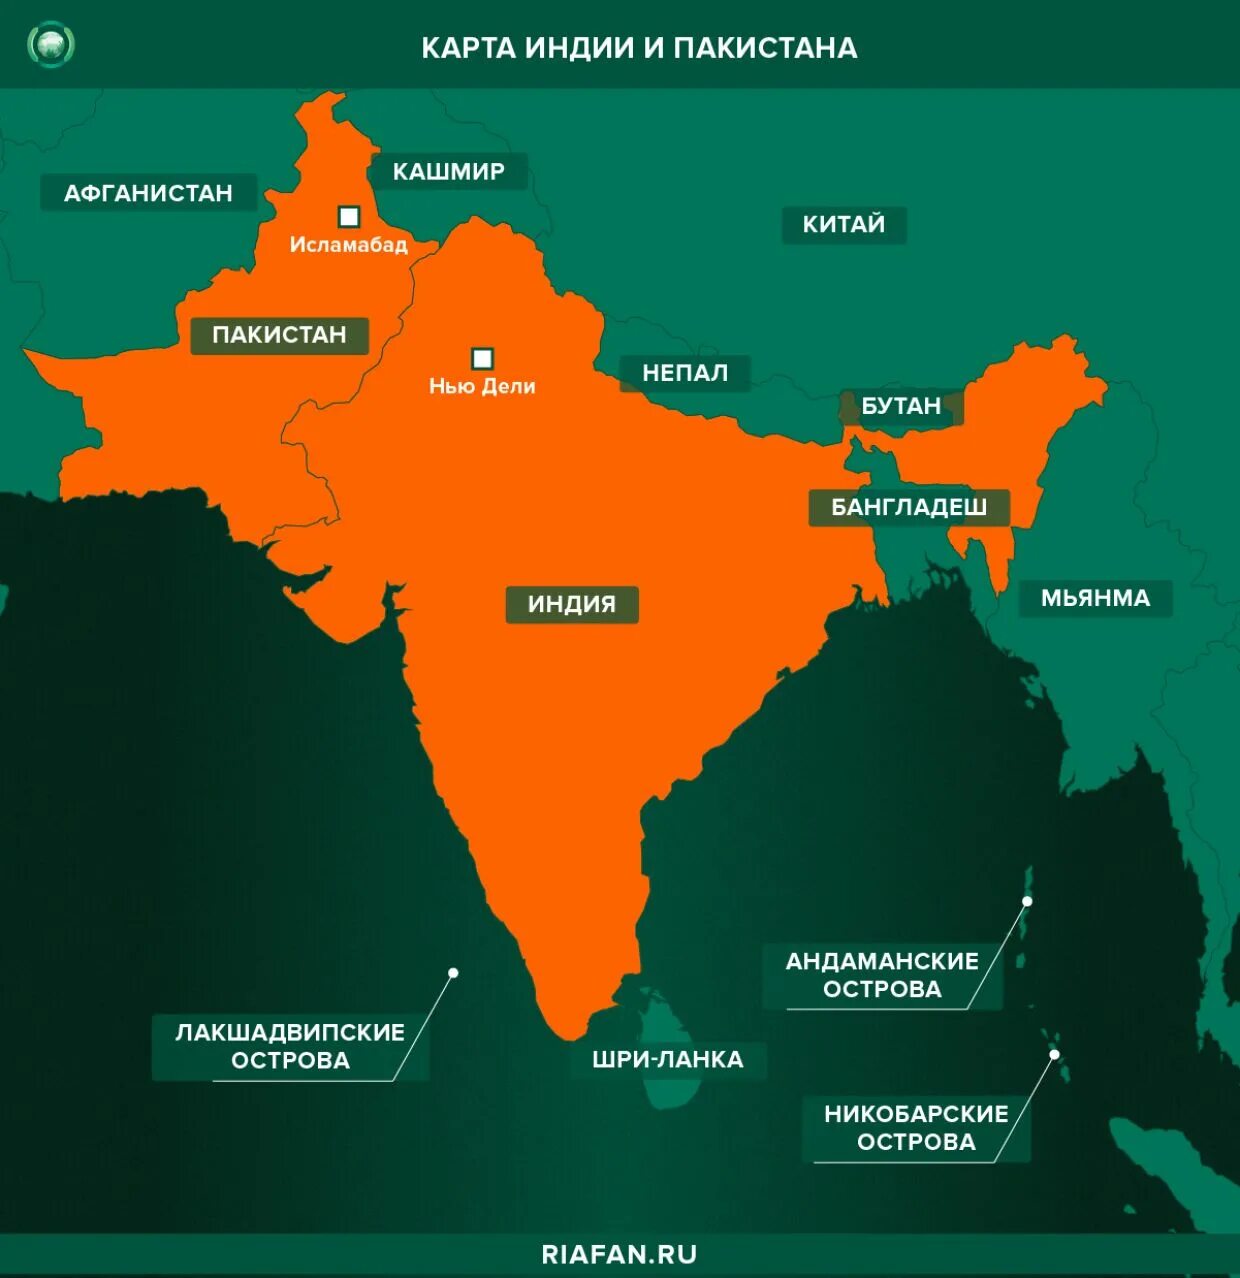 Какой код индии. Индия и Пакистан на карте. Индия и Пакистан конфликт на карте. Индия и Пакистан на карте территории. Спорная территория Индии и Пакистана.